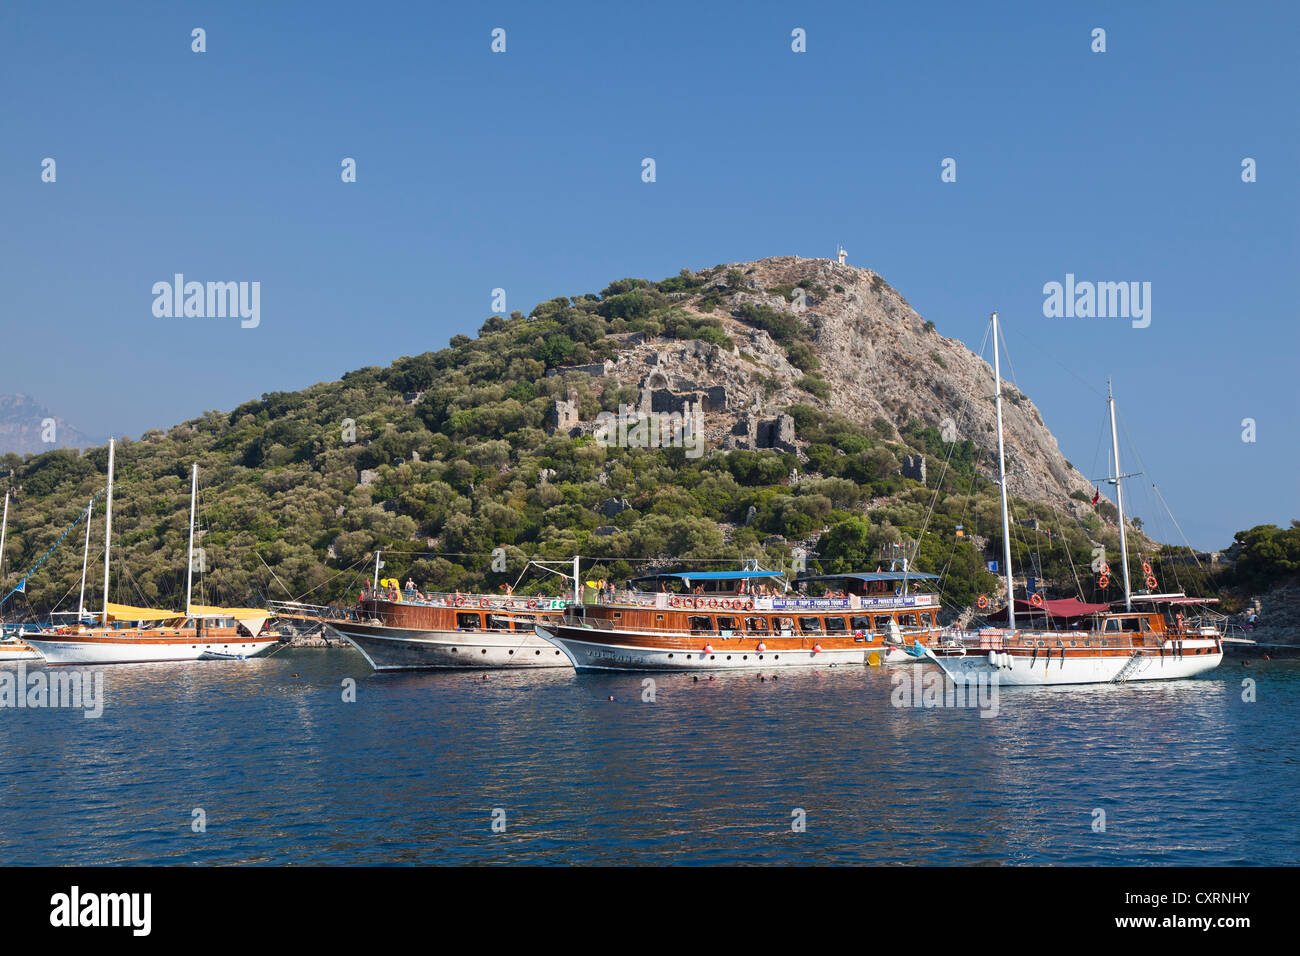 Excursion boats off Gemiler island in the Gulf of Fethiye, Lycian coast, Lycia, Mediterranean Sea, Turkey Stock Photo